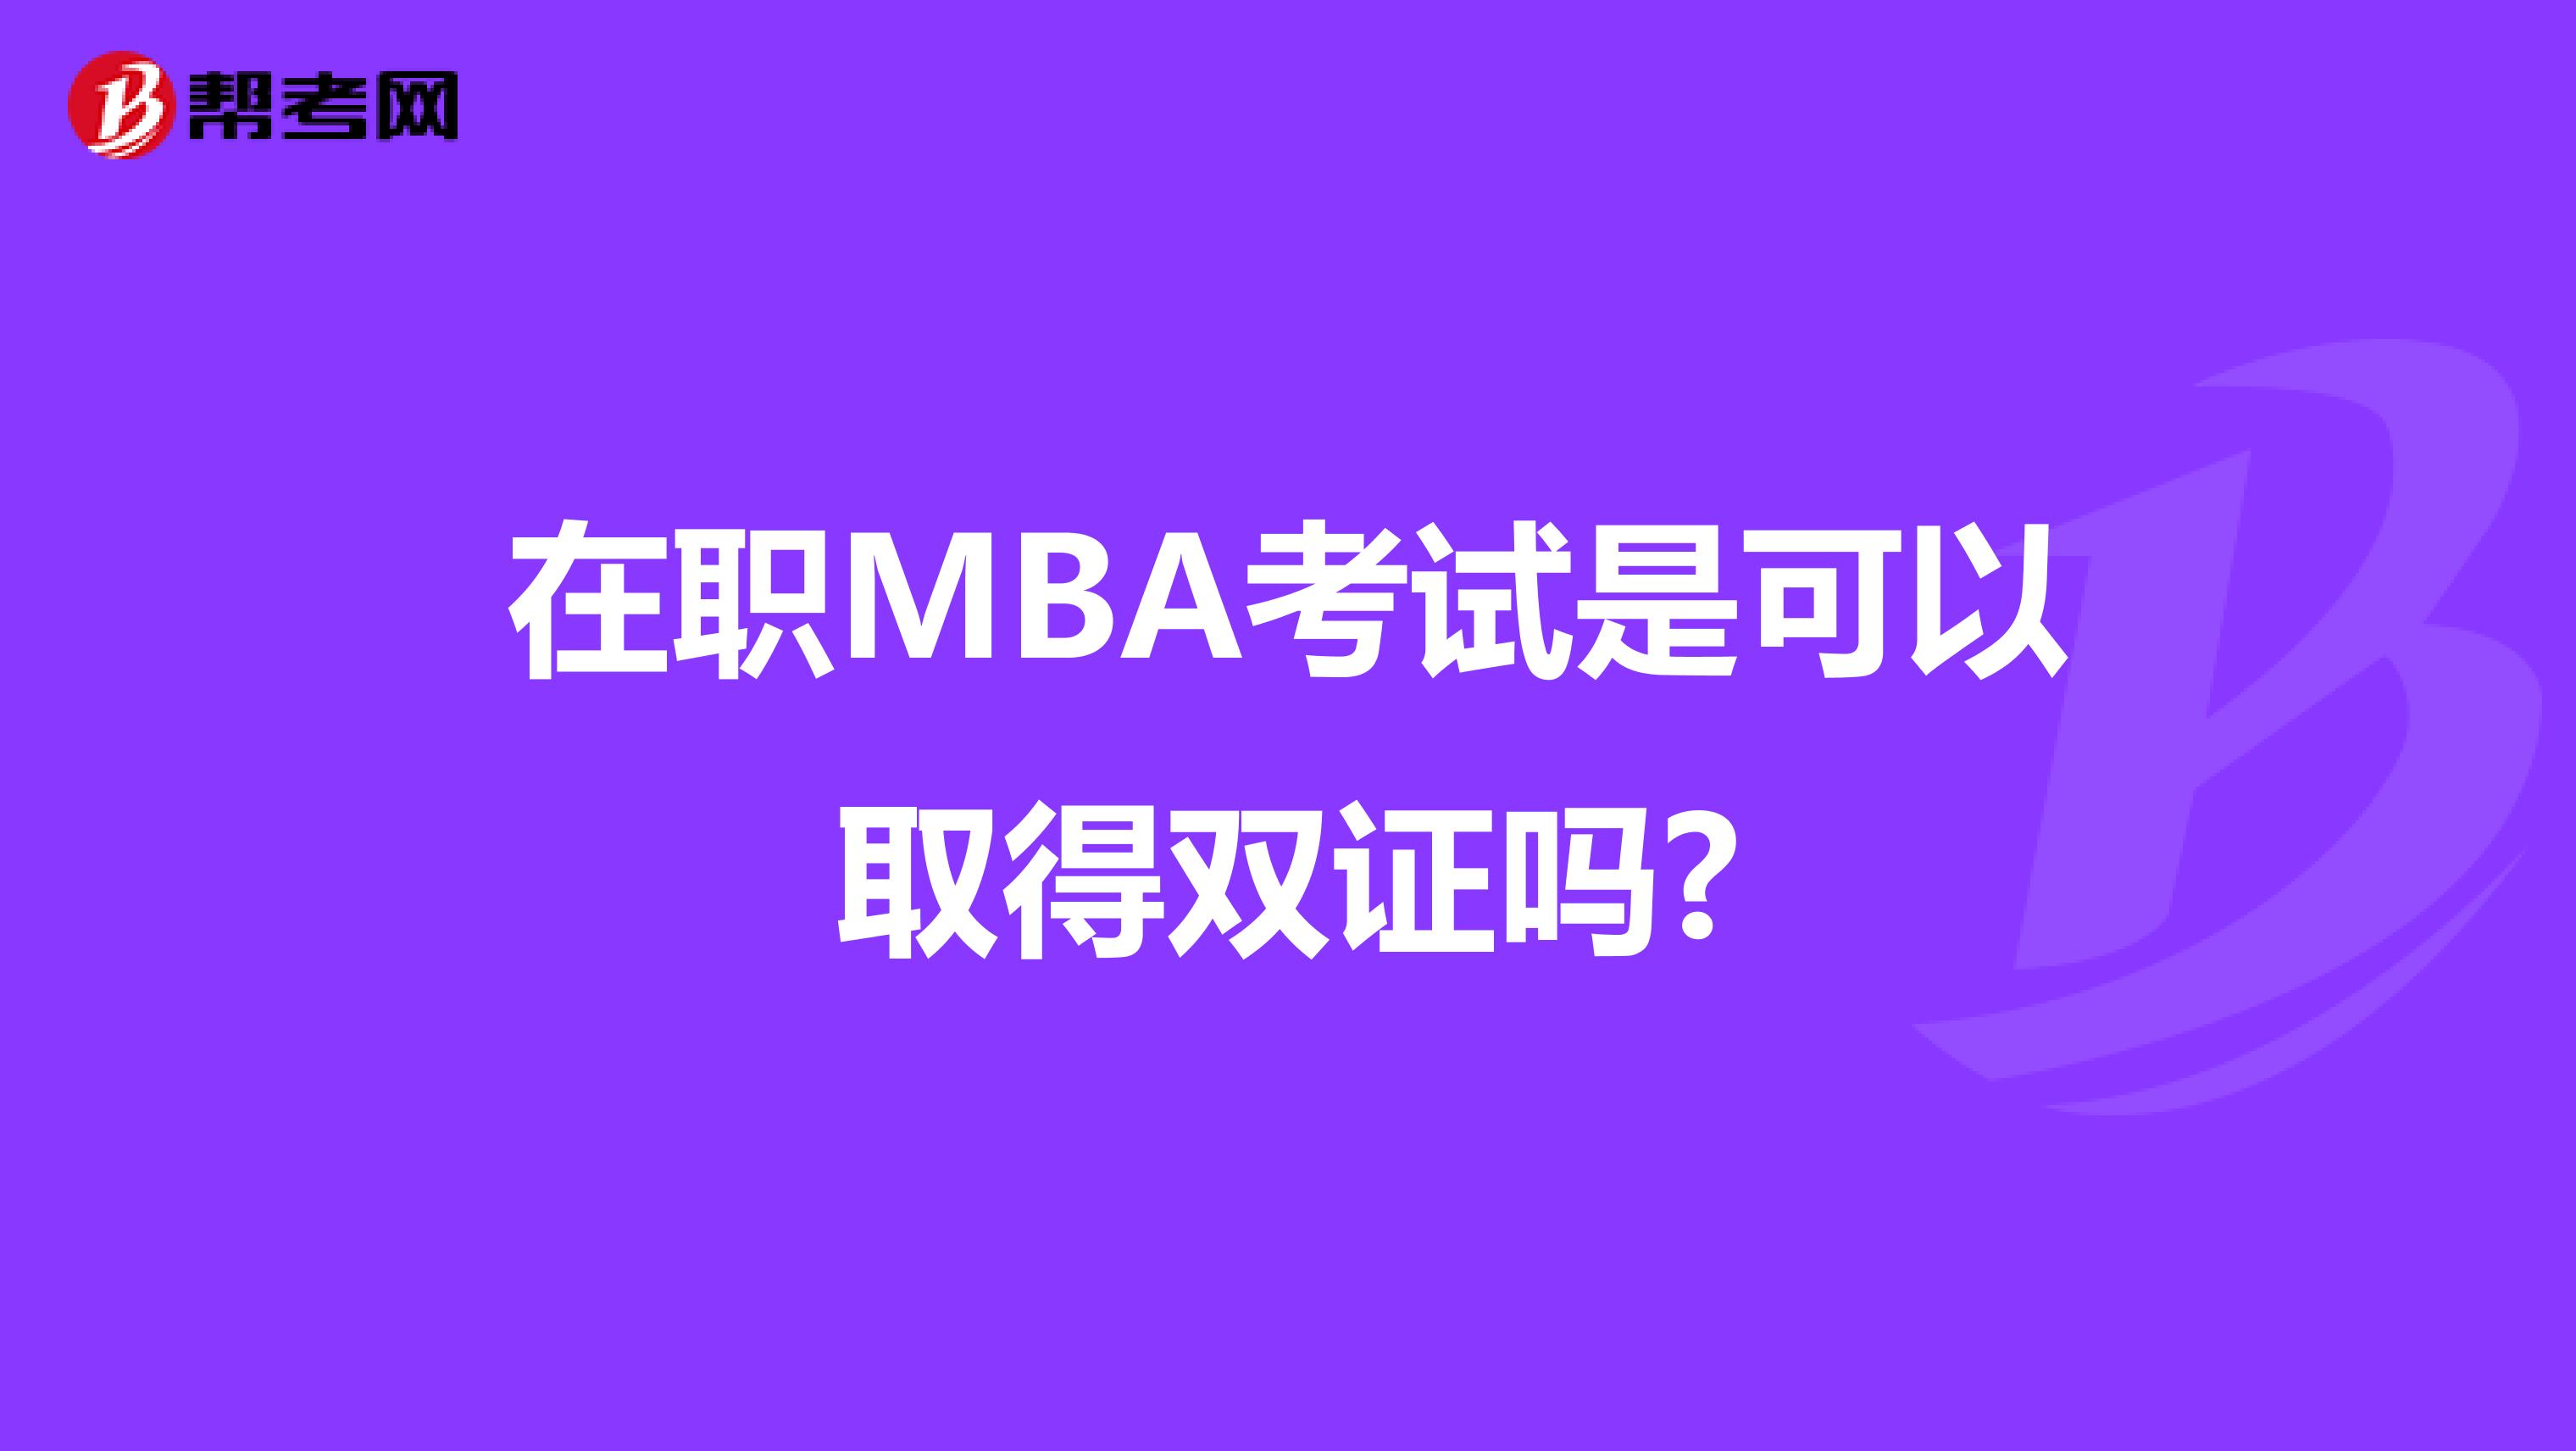 在职MBA考试是可以取得双证吗?